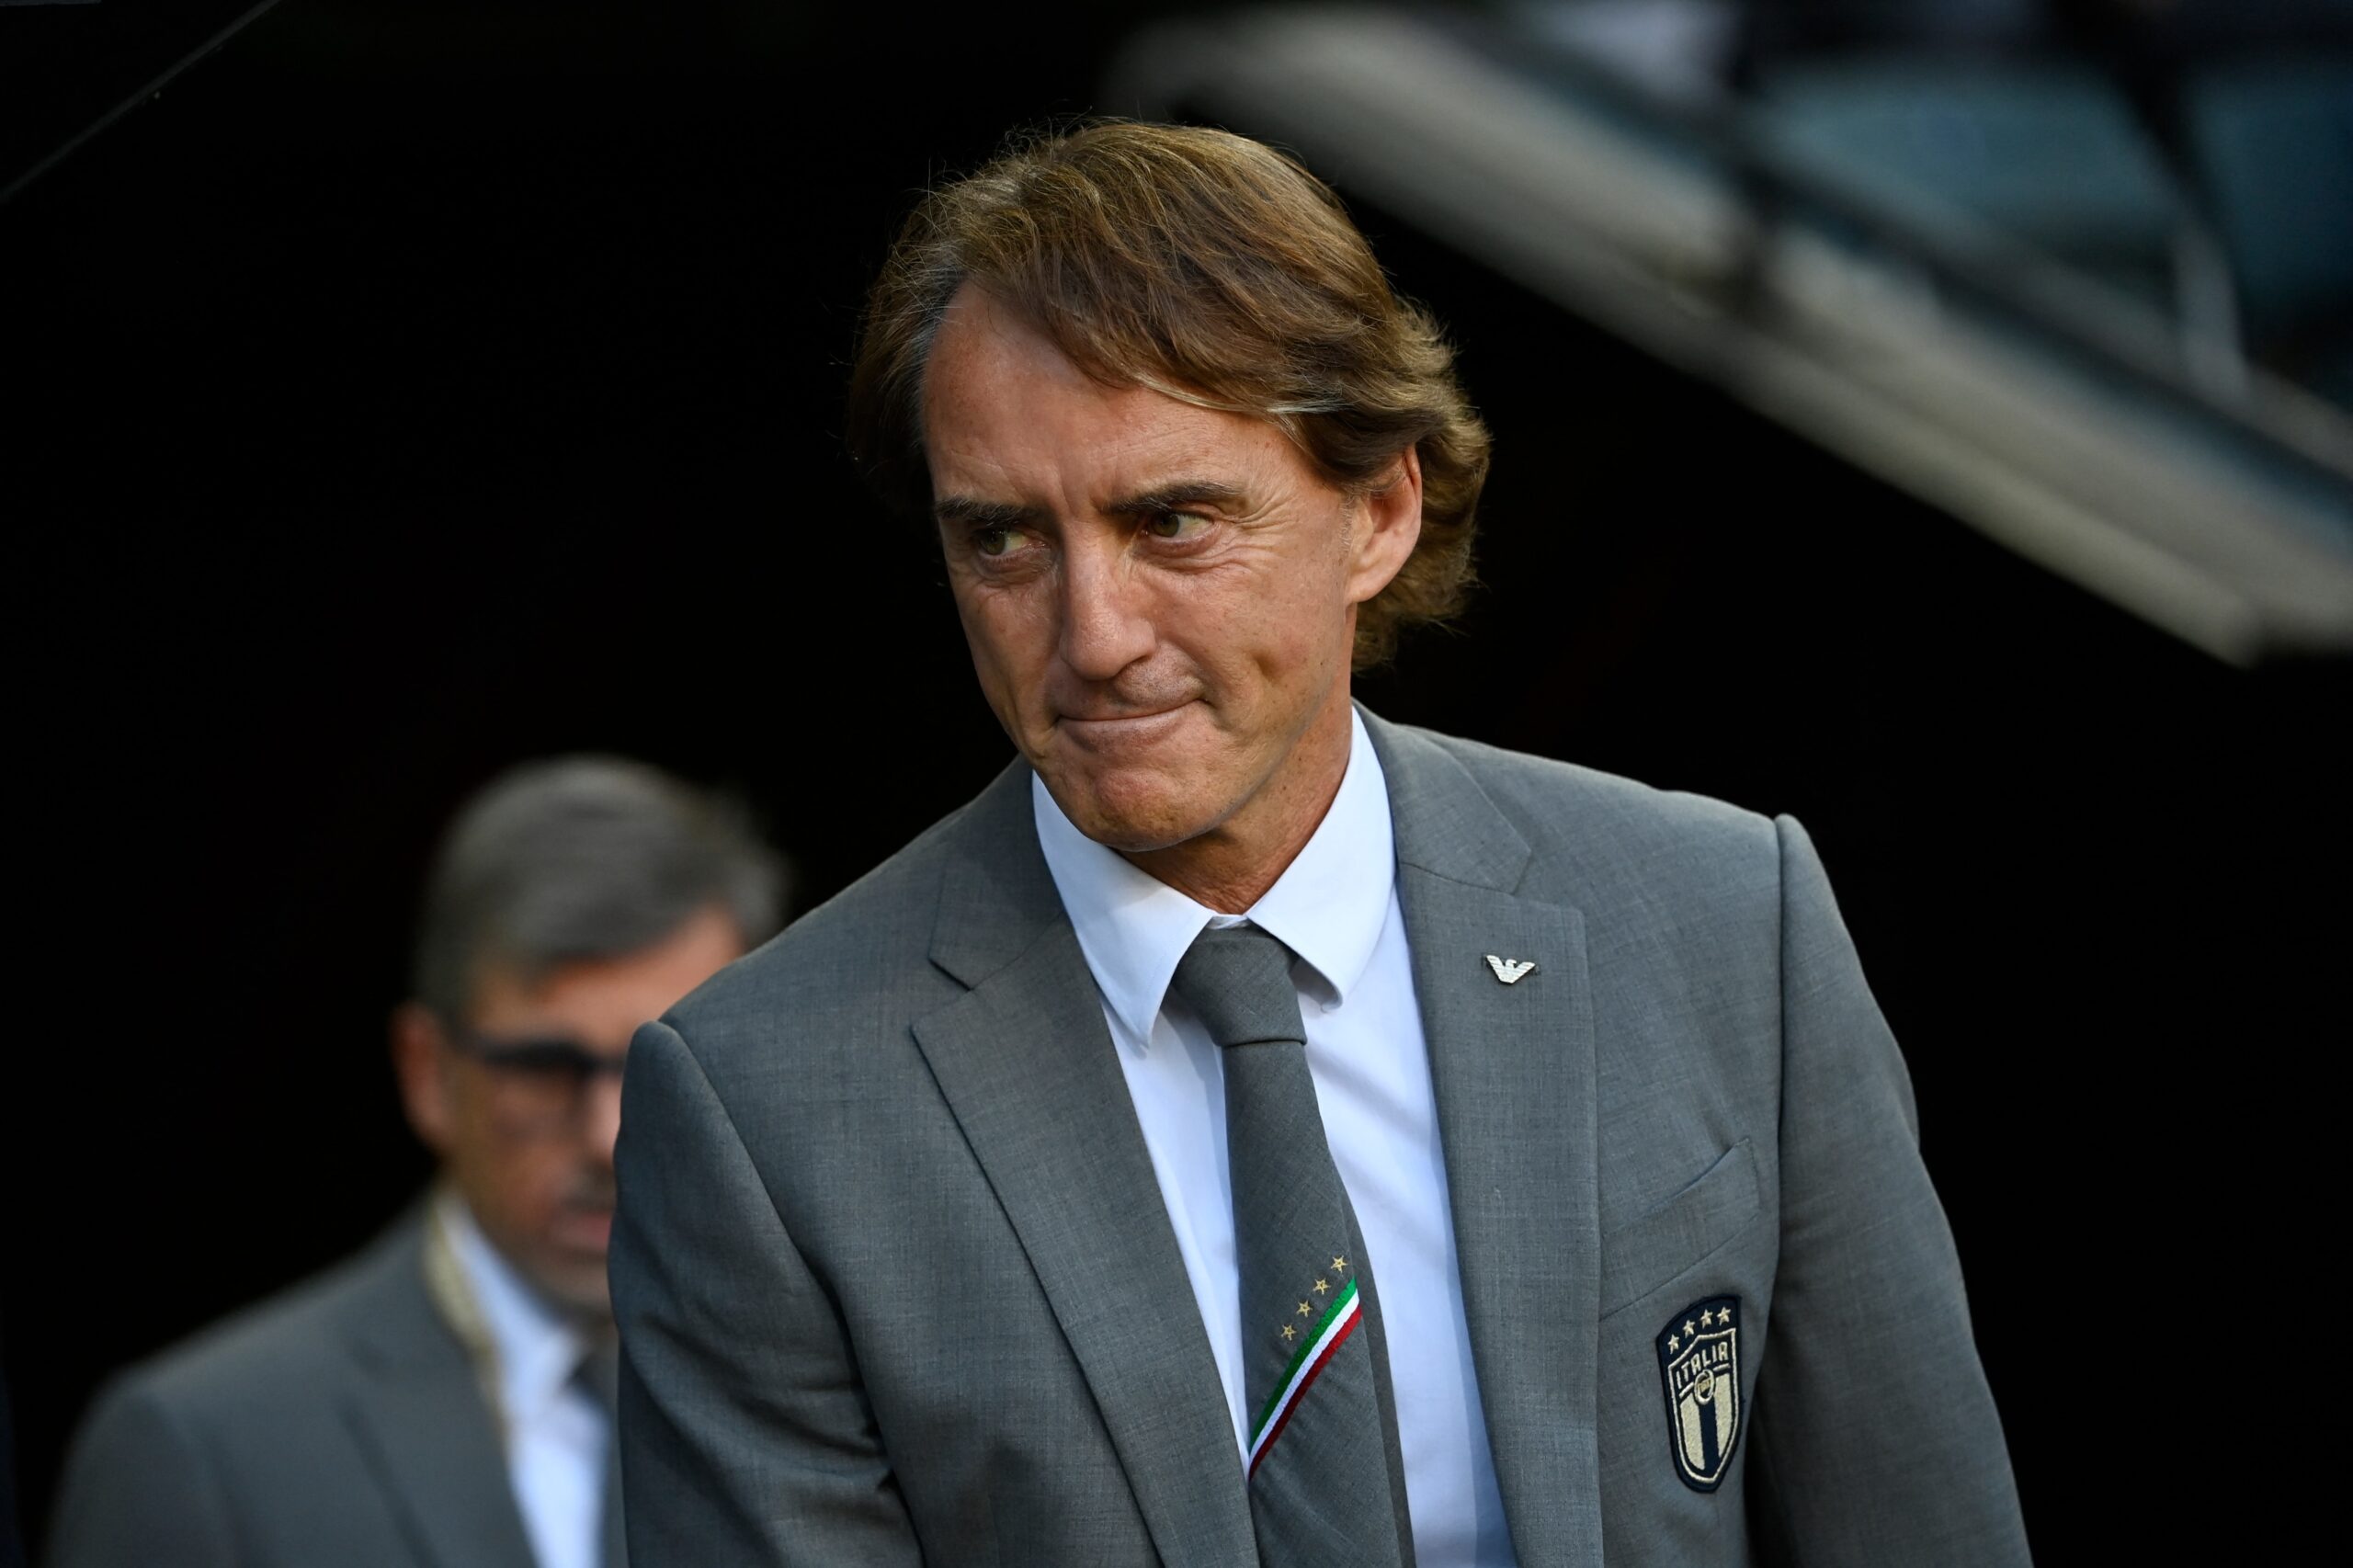 Roberto Mancini Eyes Asian Cup As He Seals Lucrative Saudi Move